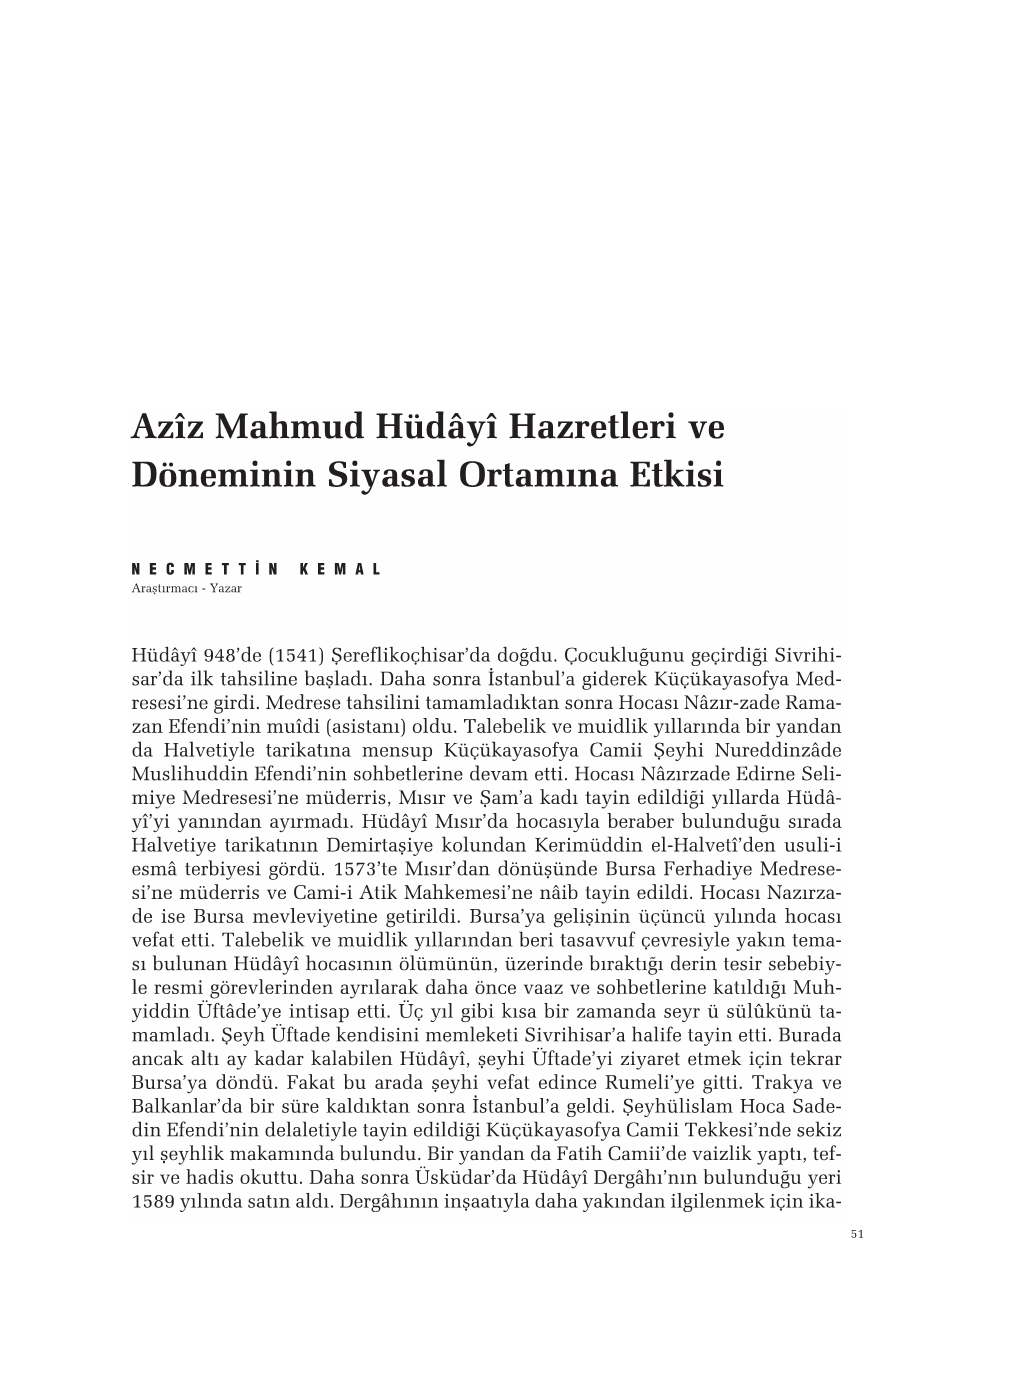 Azîz Mahmud Hüdâyî Hazretleri Ve Döneminin Siyasal Ortam›Na Etkisi